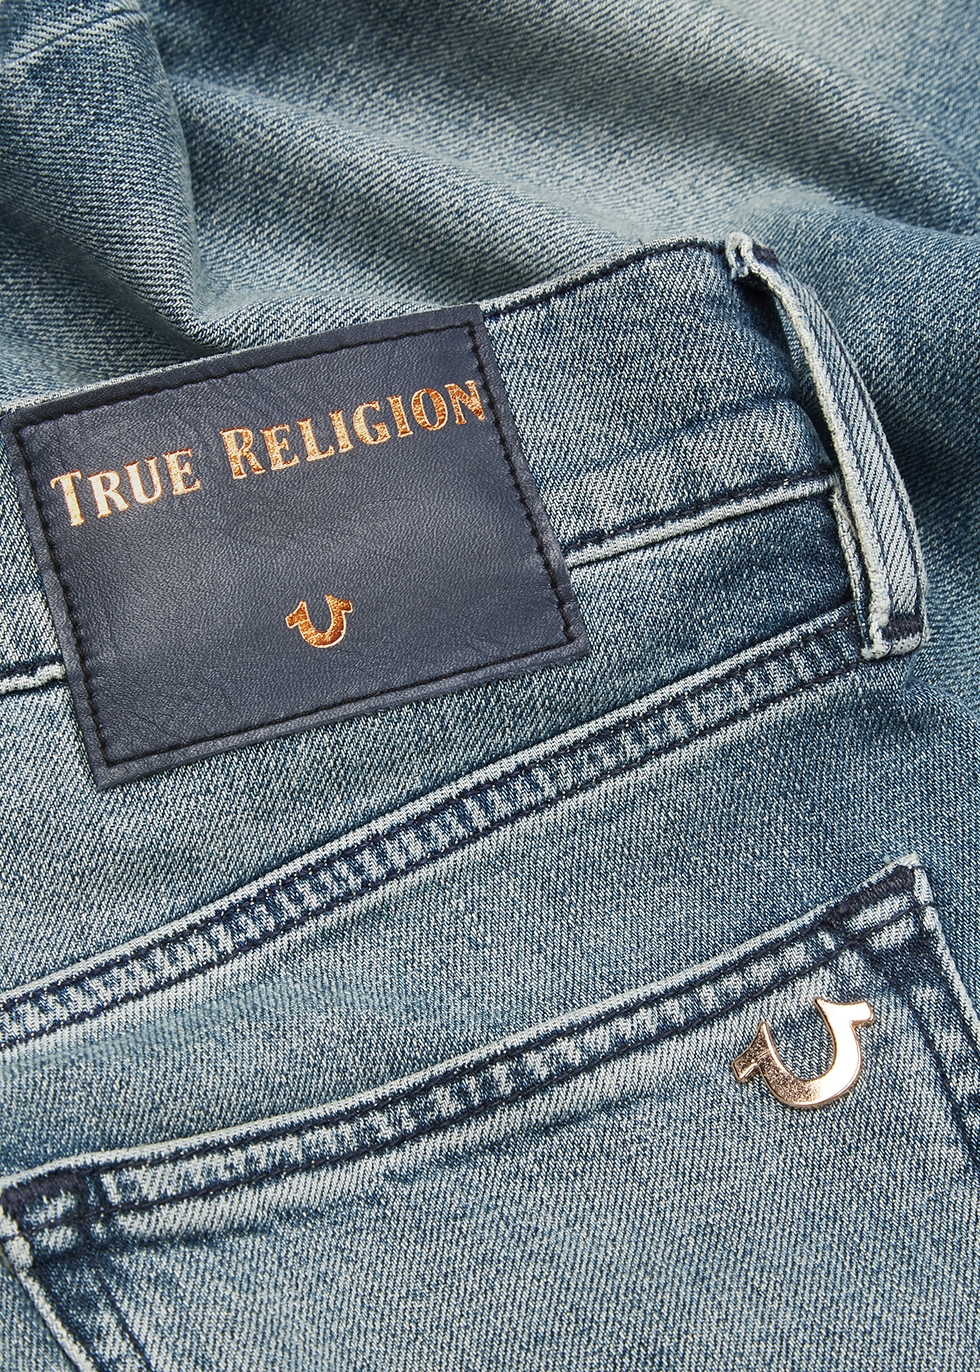 blue true religion